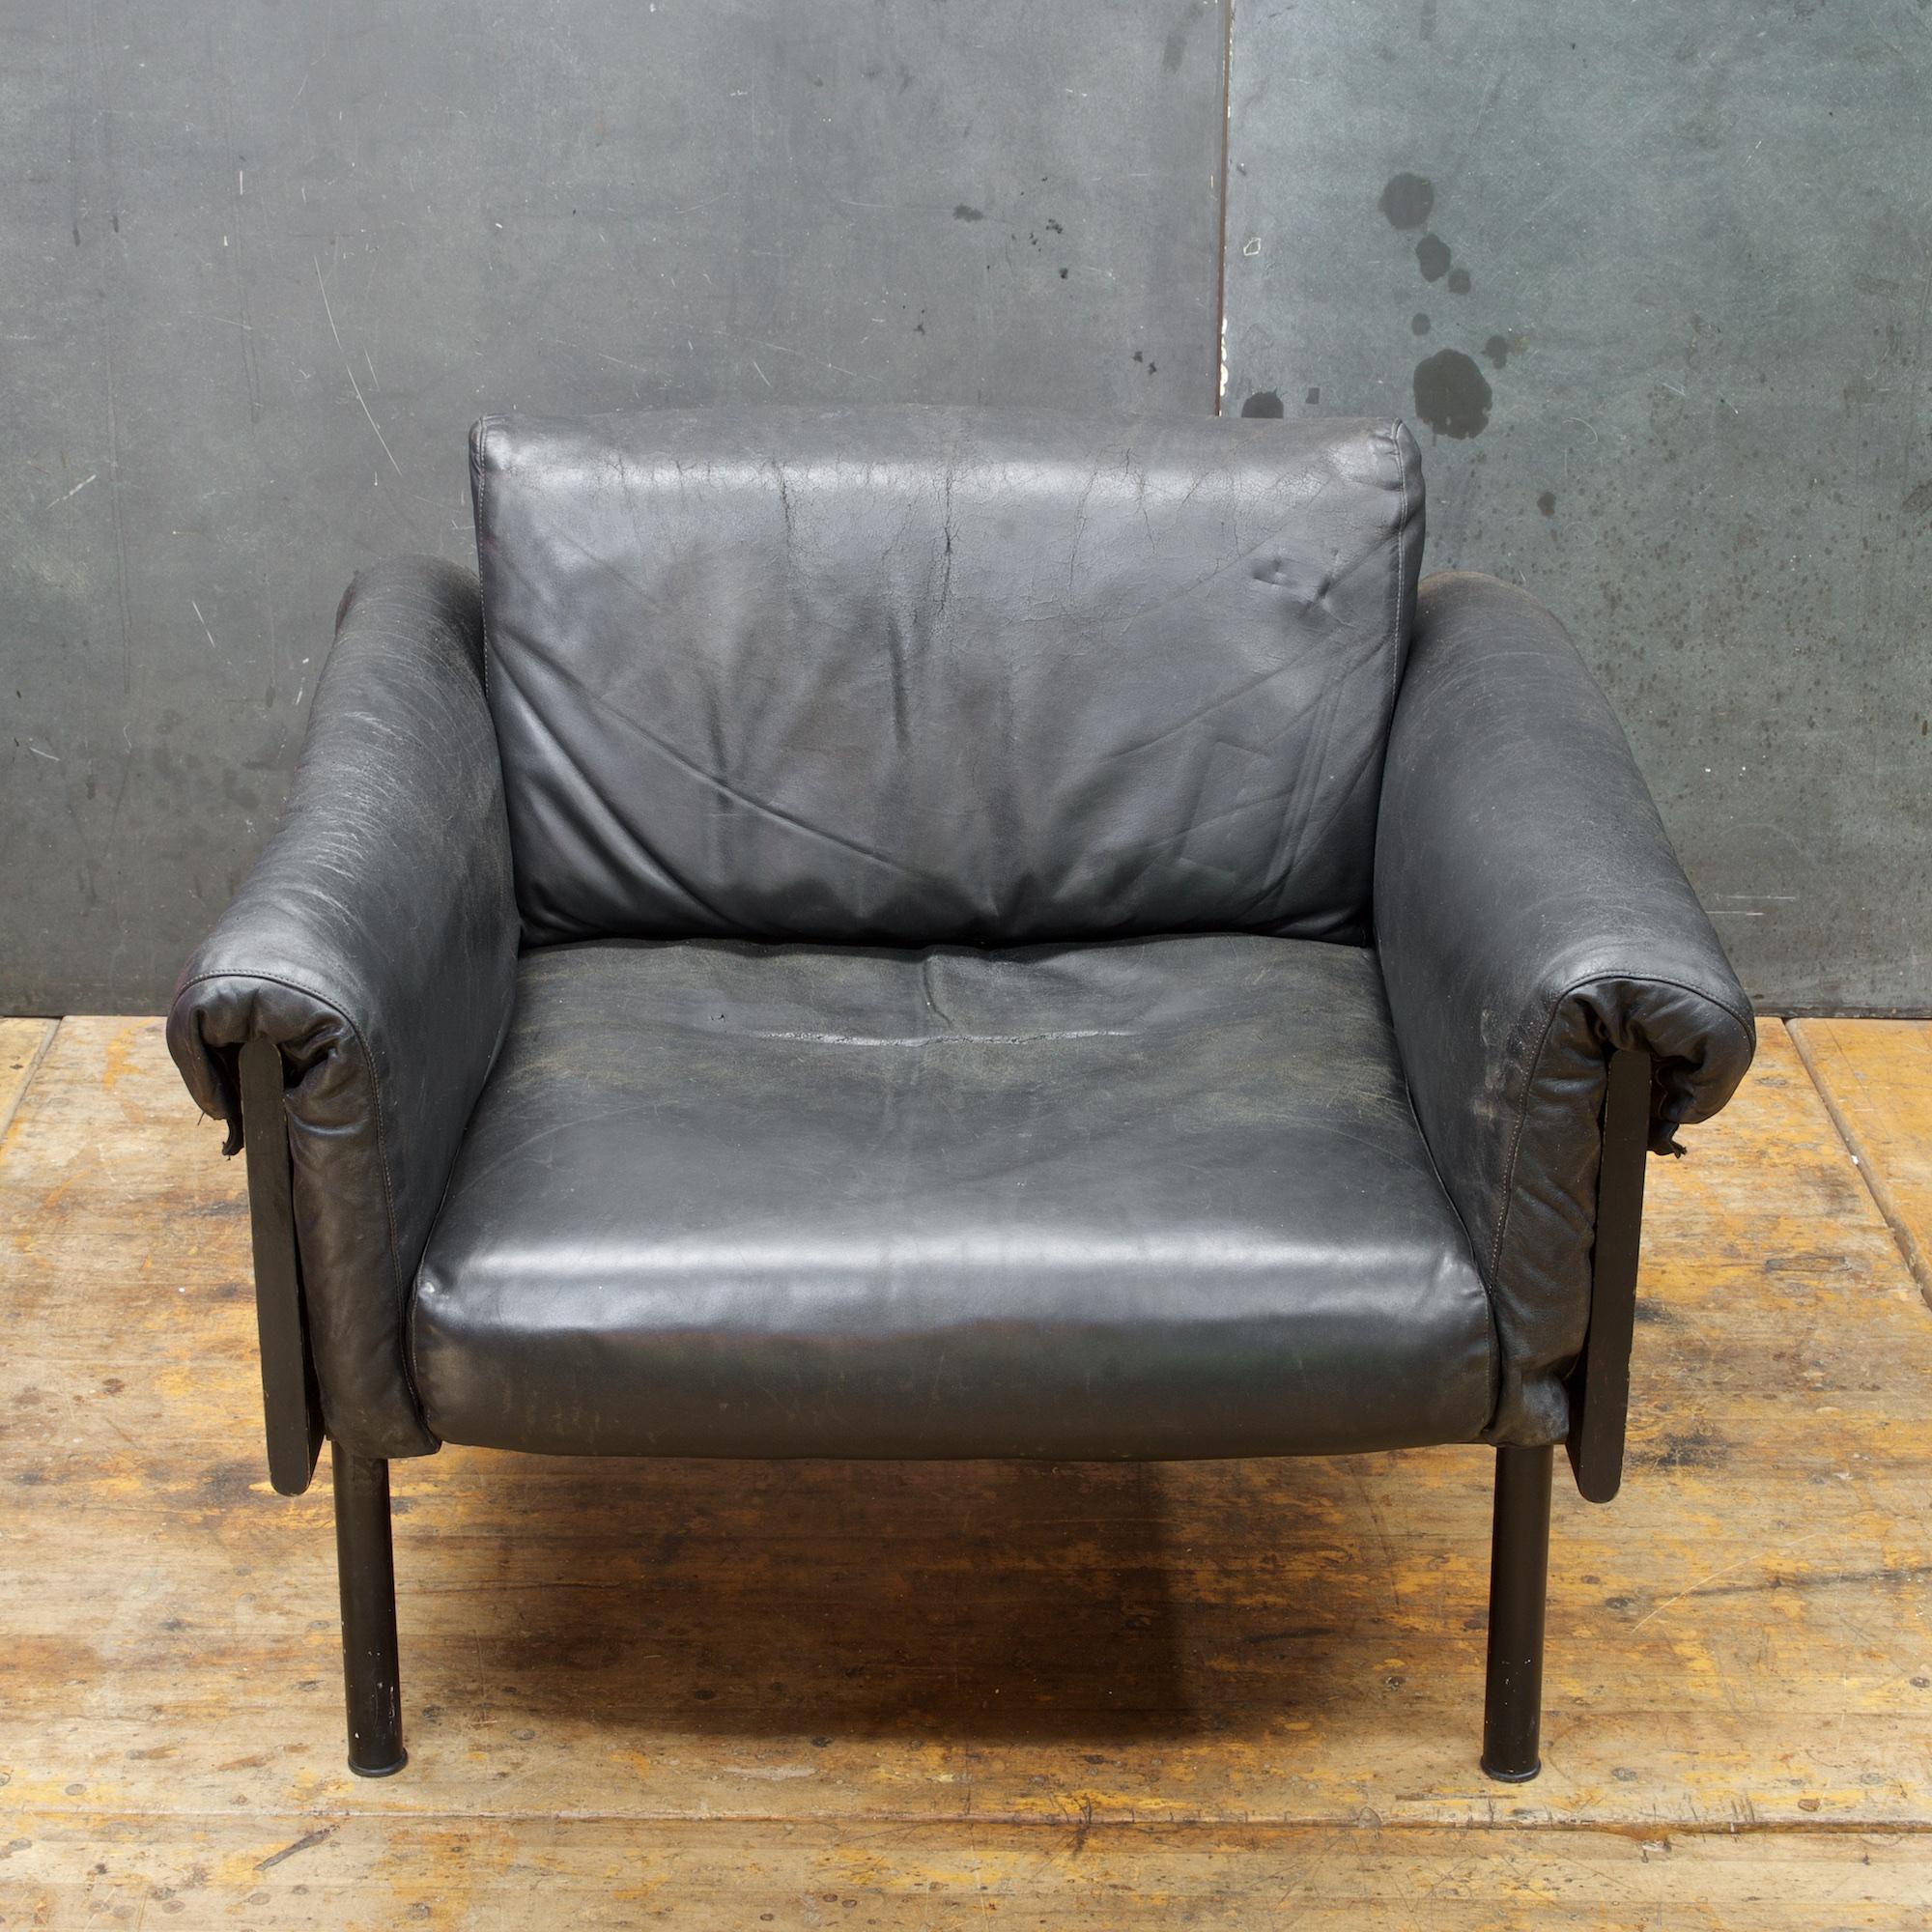 Finnish Ateljee Black Leather Lounge Chair Yrjo Kukkapuro Vintage Midcentury Mad Men DC